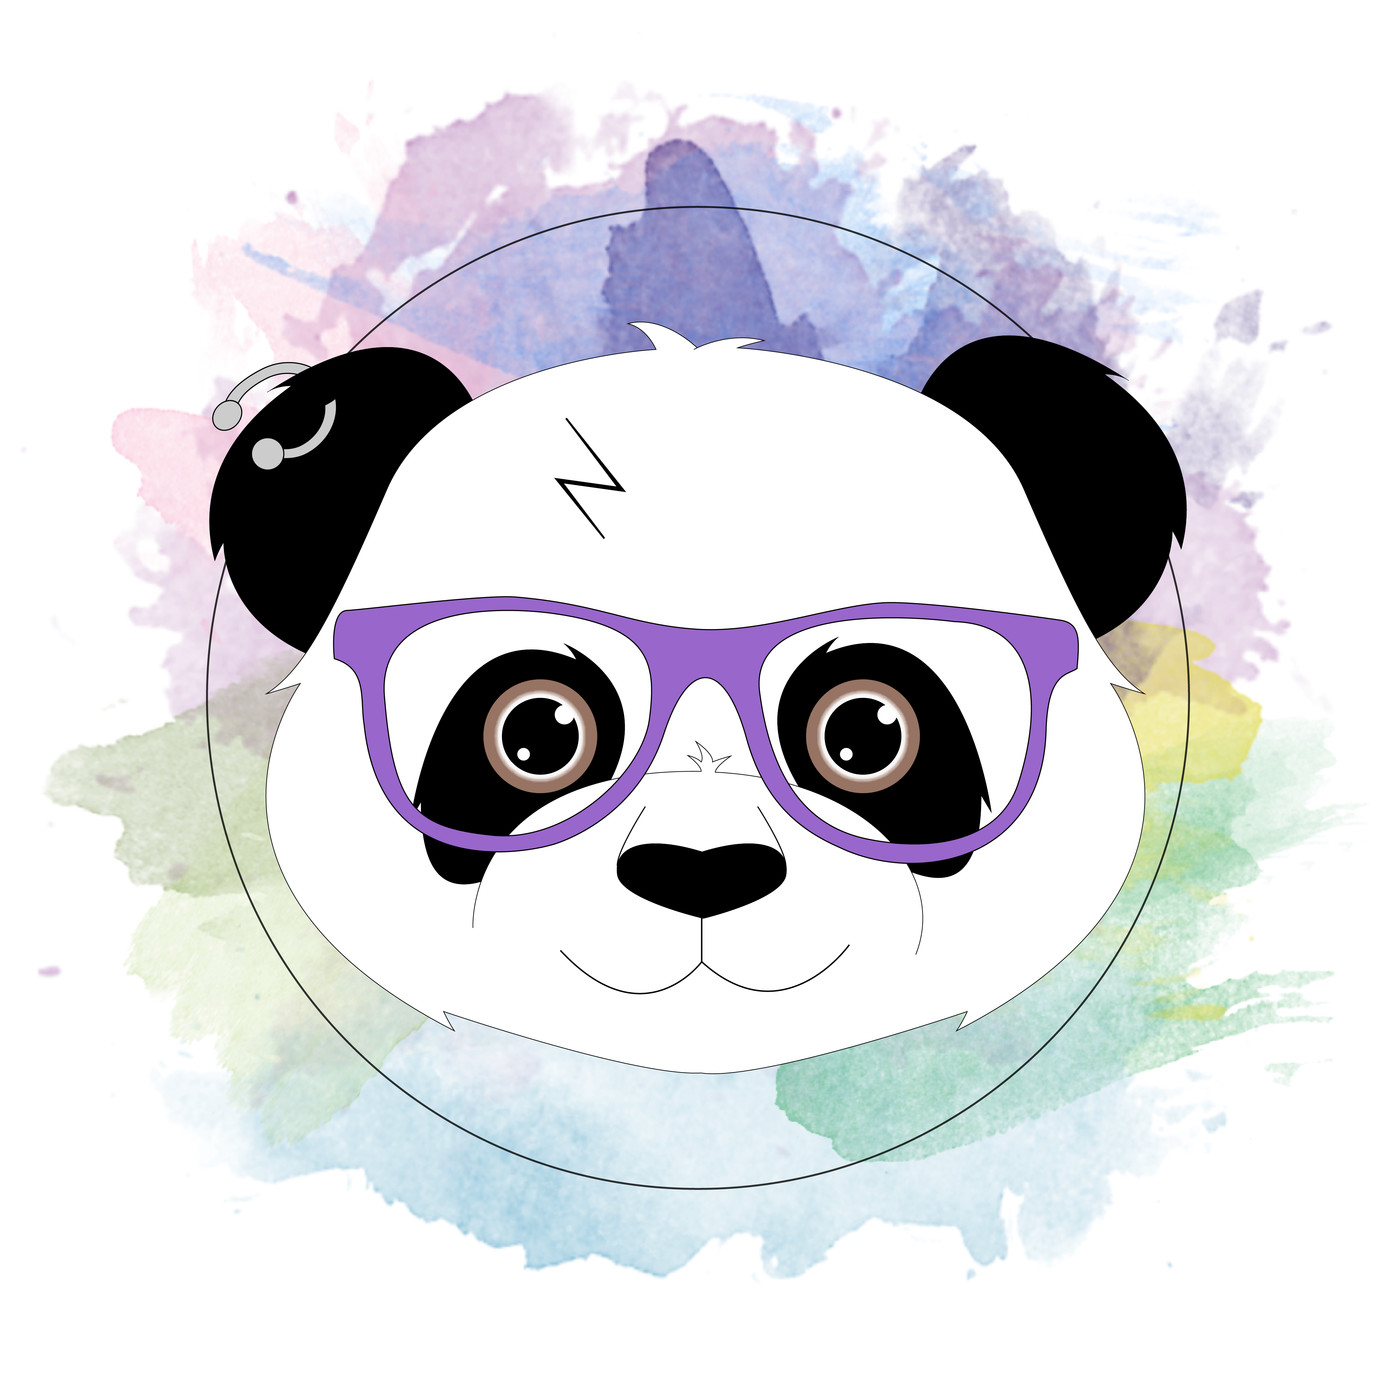 Di Pandas' s01e06 'La burbuja seriéfila'